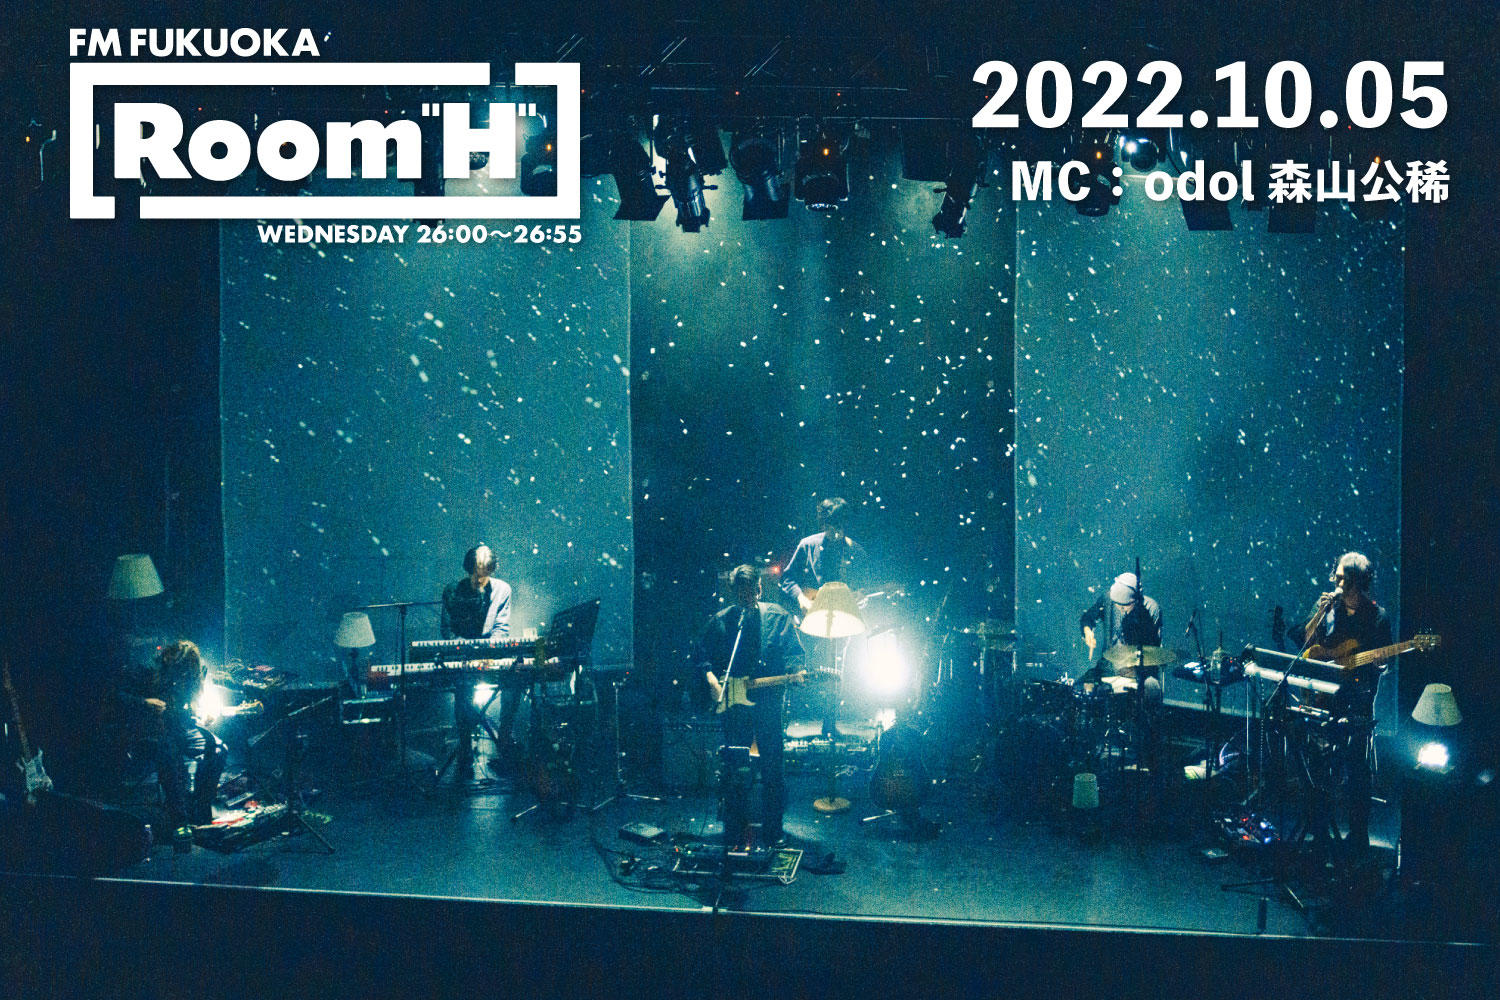 【読むラジオ】MC：森山公稀(odol) 作曲家のヨハン・ヨハンソンを特集！「Room H」-2022.10.05-